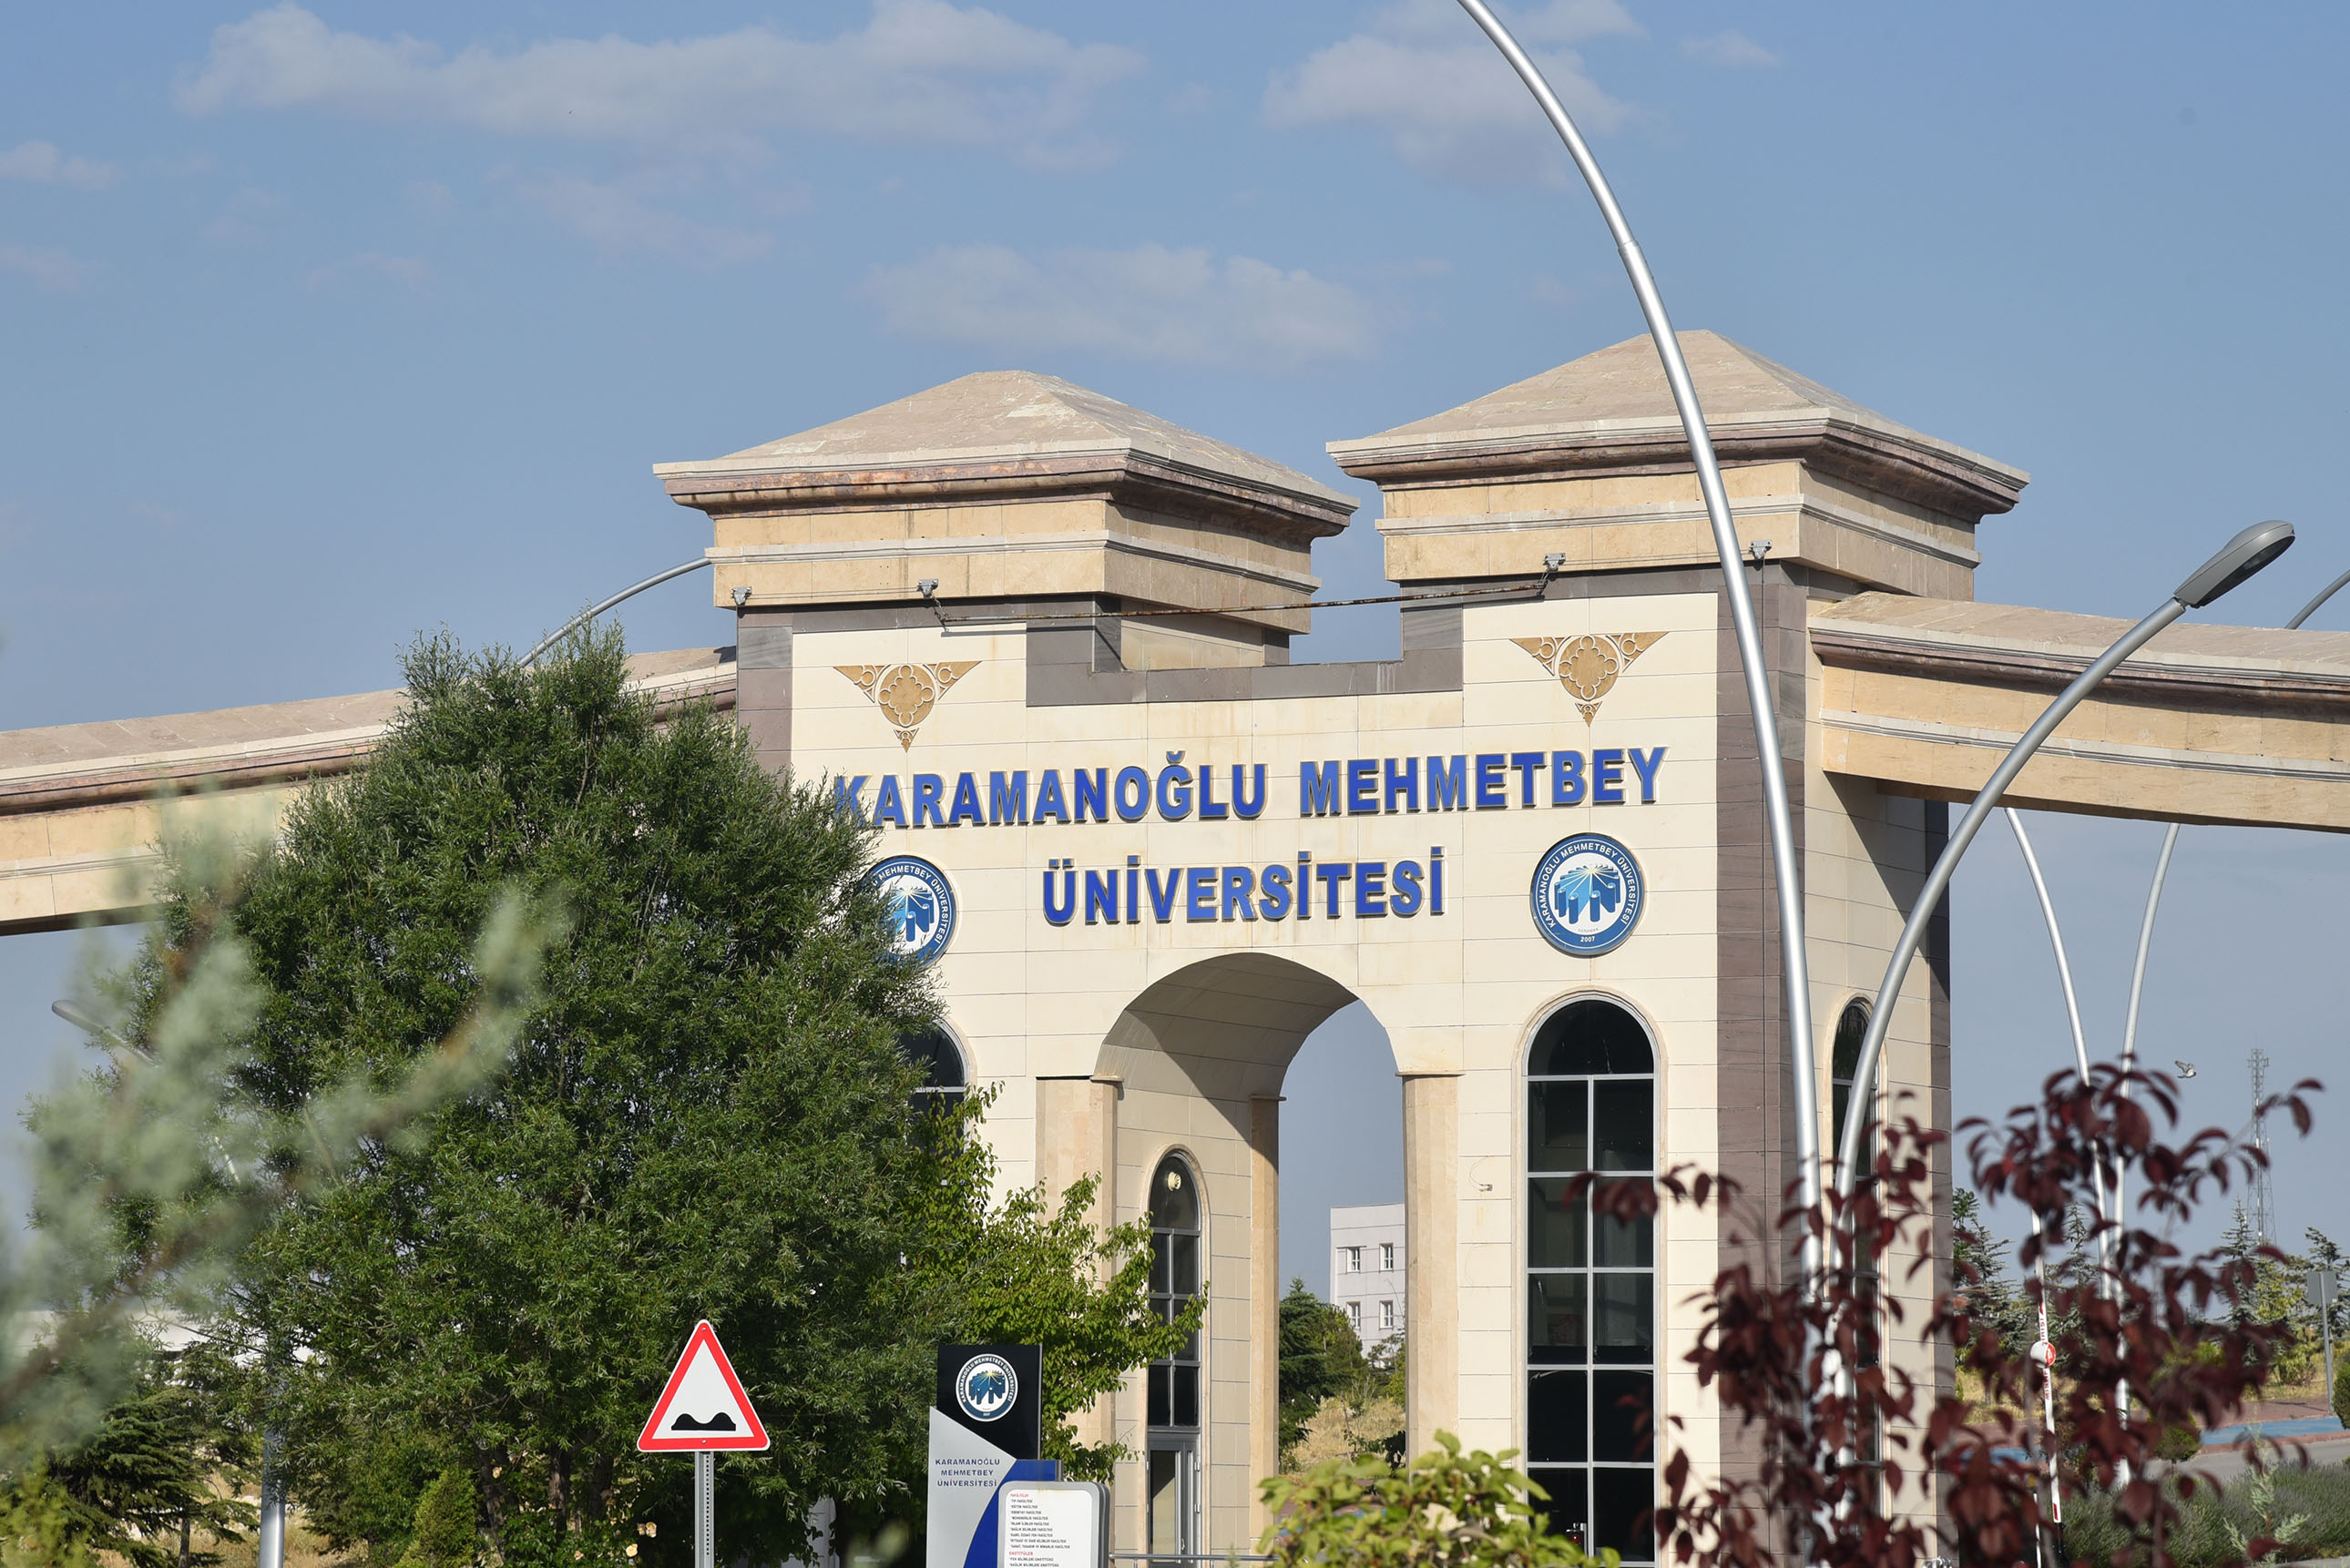 Kmü, Karamanoğlu Mehmet Bey Üniversitesi